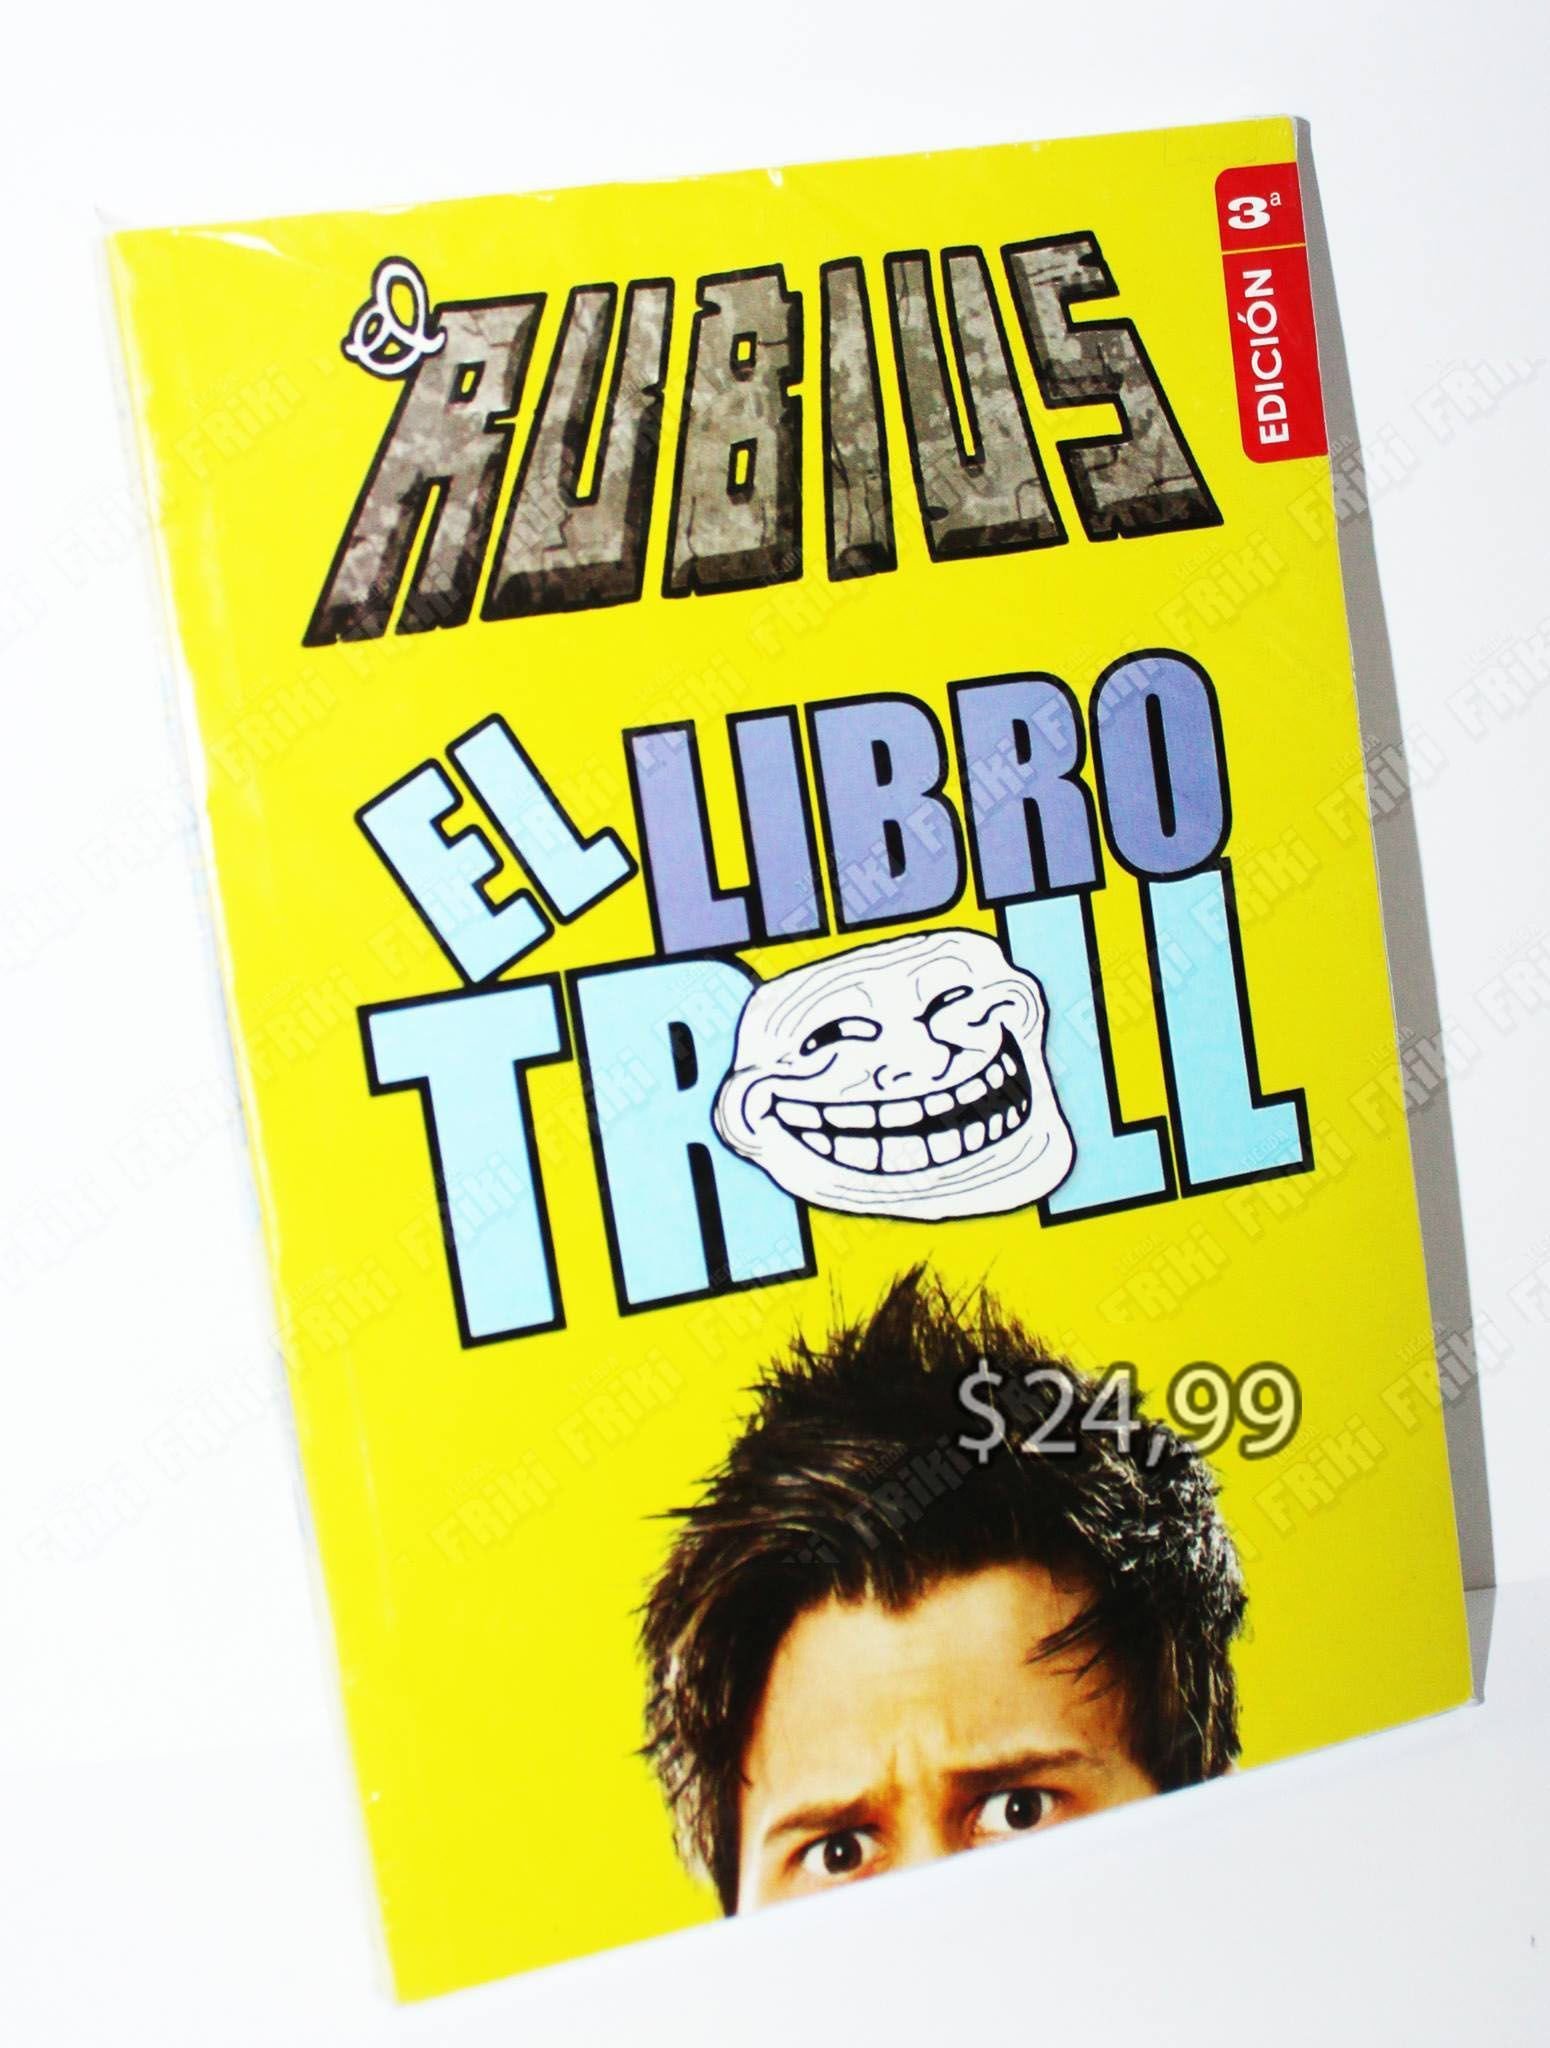 Libros Varios El Libro Troll by ElRubiusOMG Ecuador Comprar Venden, Bonita Apariencia ideal para los fans, practica, Hermoso material de papel Color como en la imagen Estado usado